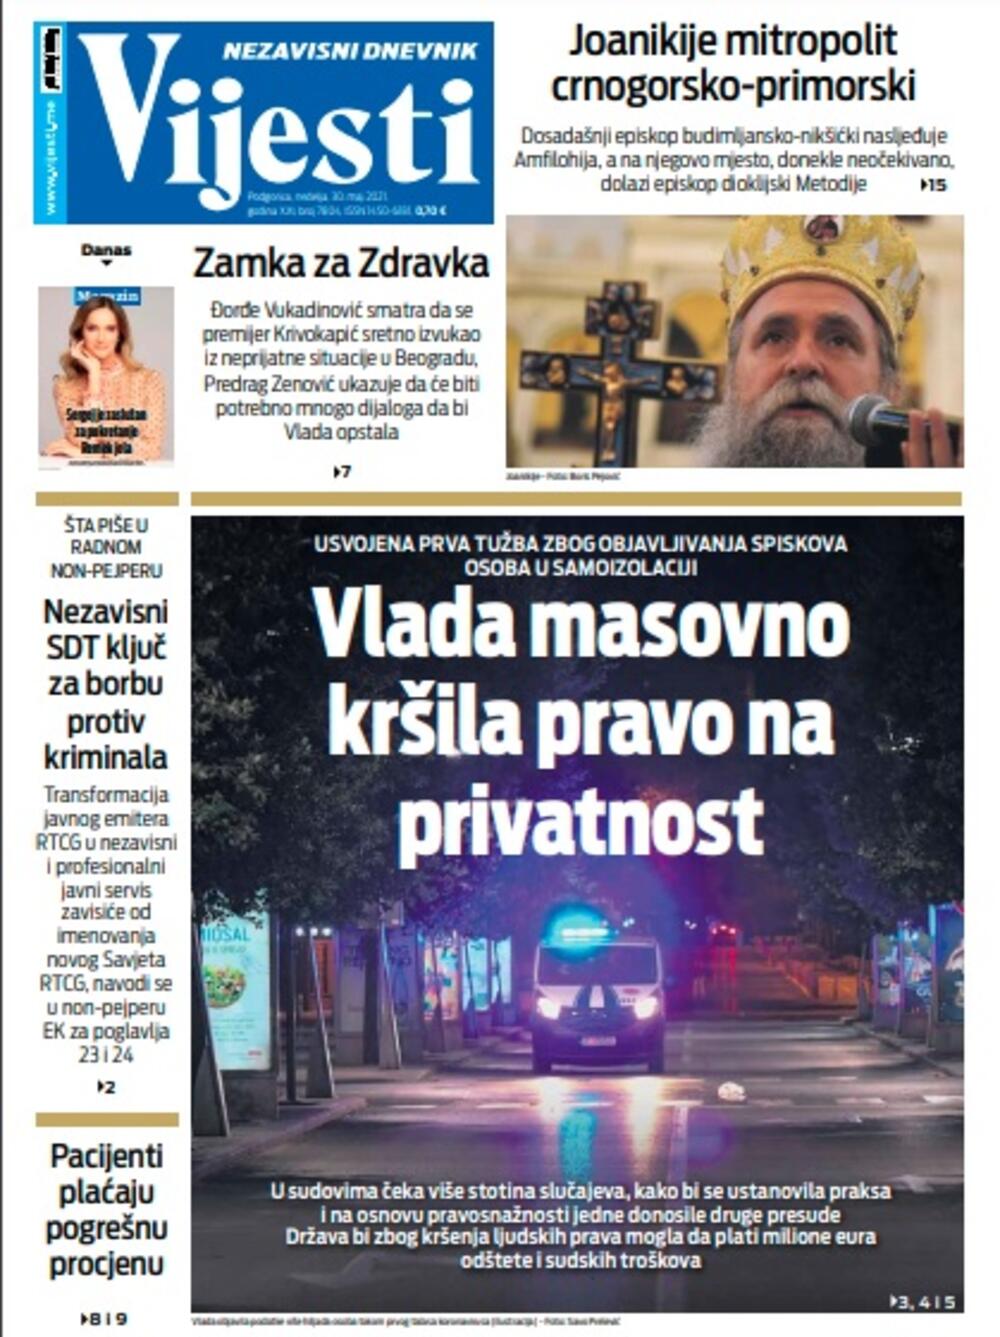 Naslovna strana "Vijesti" za nedjelju 30. maj 2021. godine, Foto: Vijesti